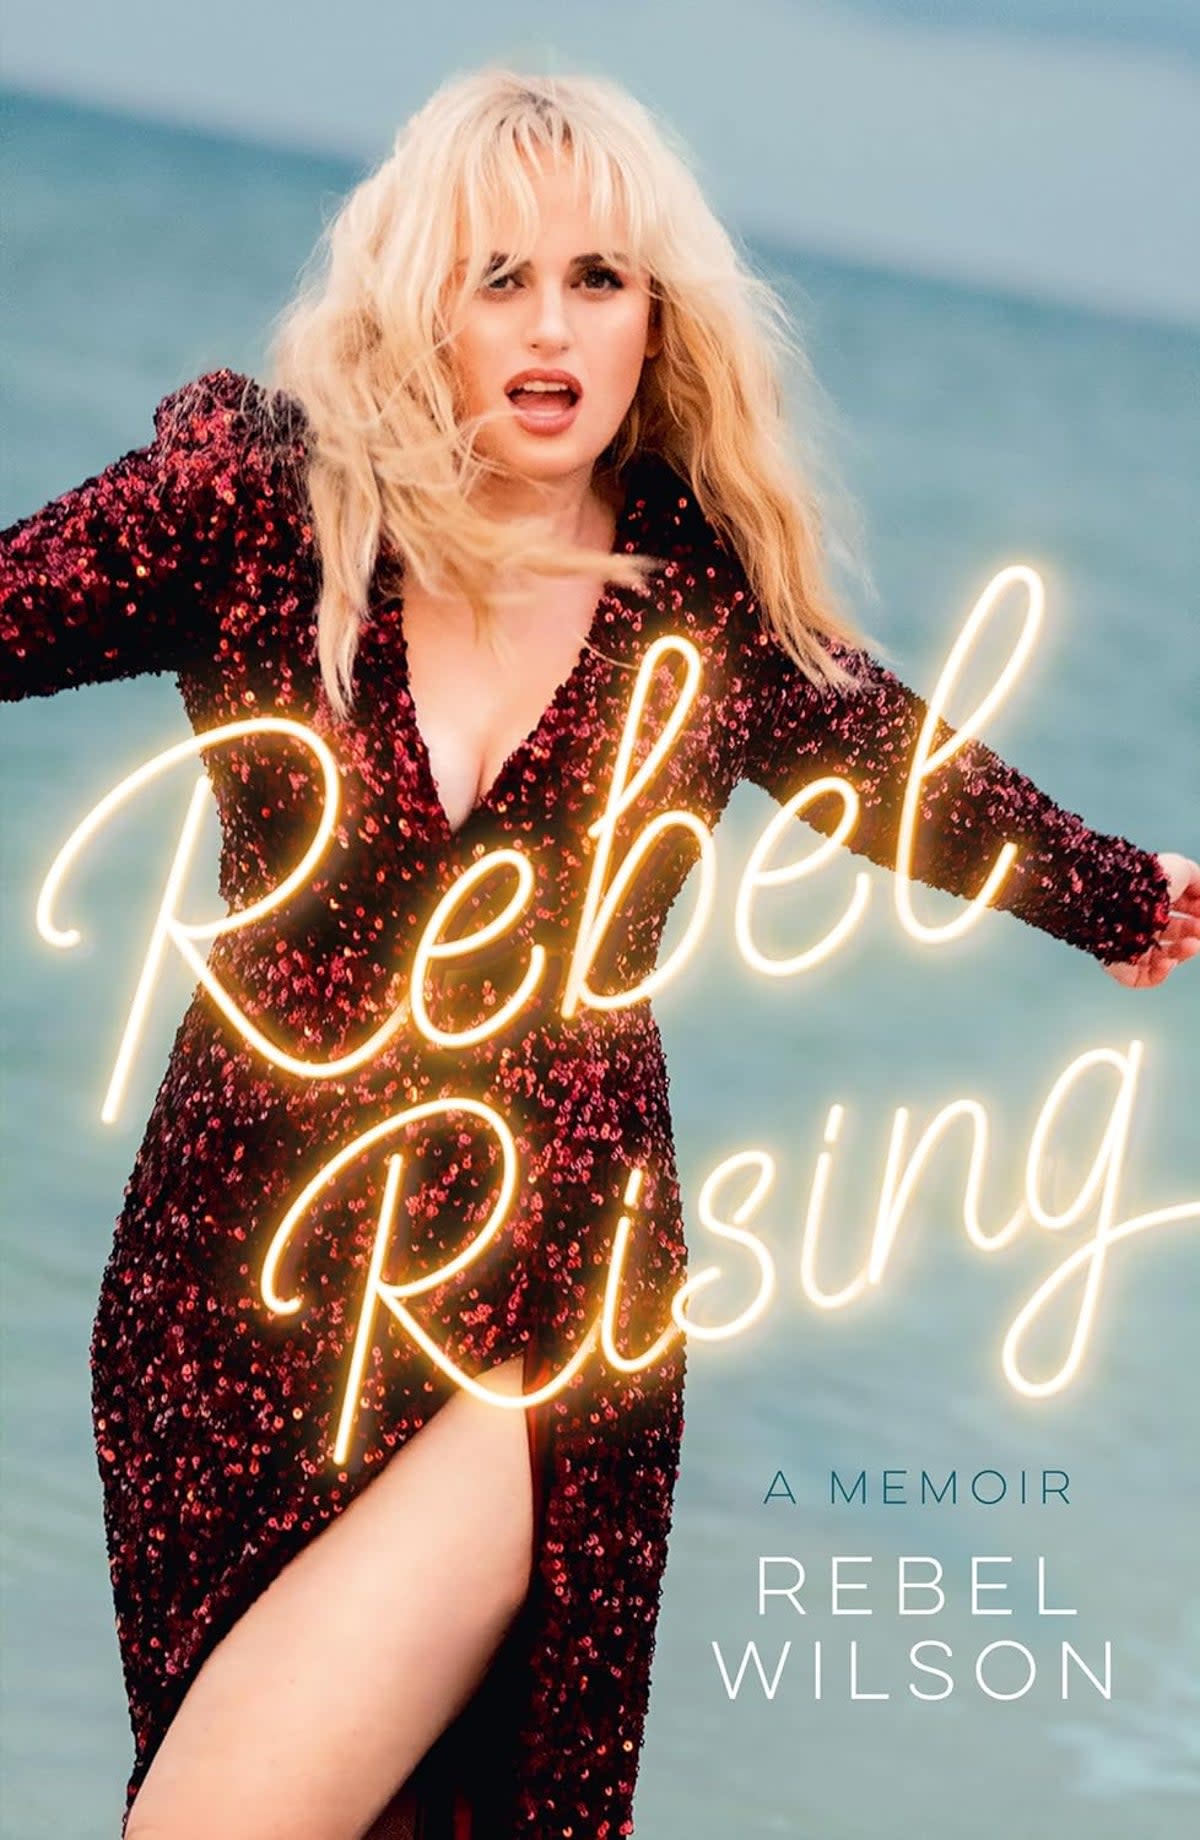 Disappointing: Rebel Wilson’s new memoir, ‘Rebel Rising’ (HarperCollins)